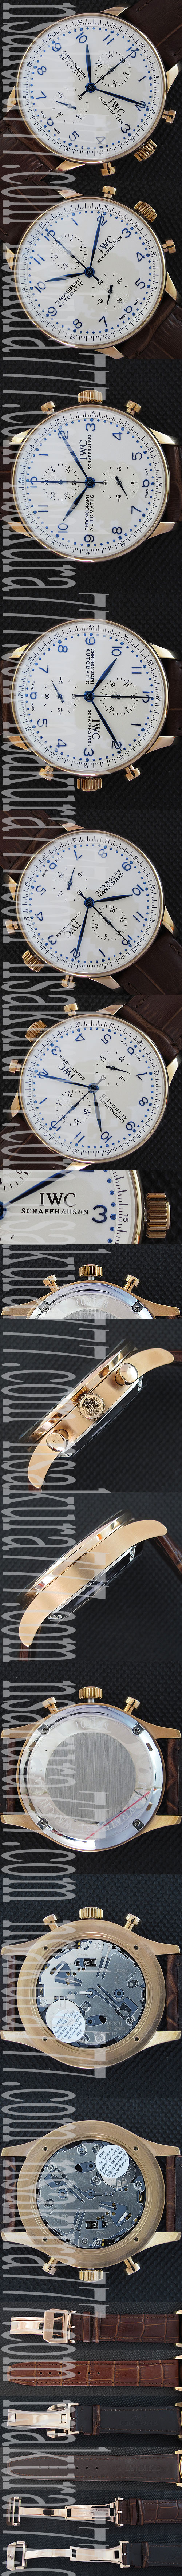 紳士腕時計IWCポルトギーゼクロノグラフ IW3714 クォーツムーブメント